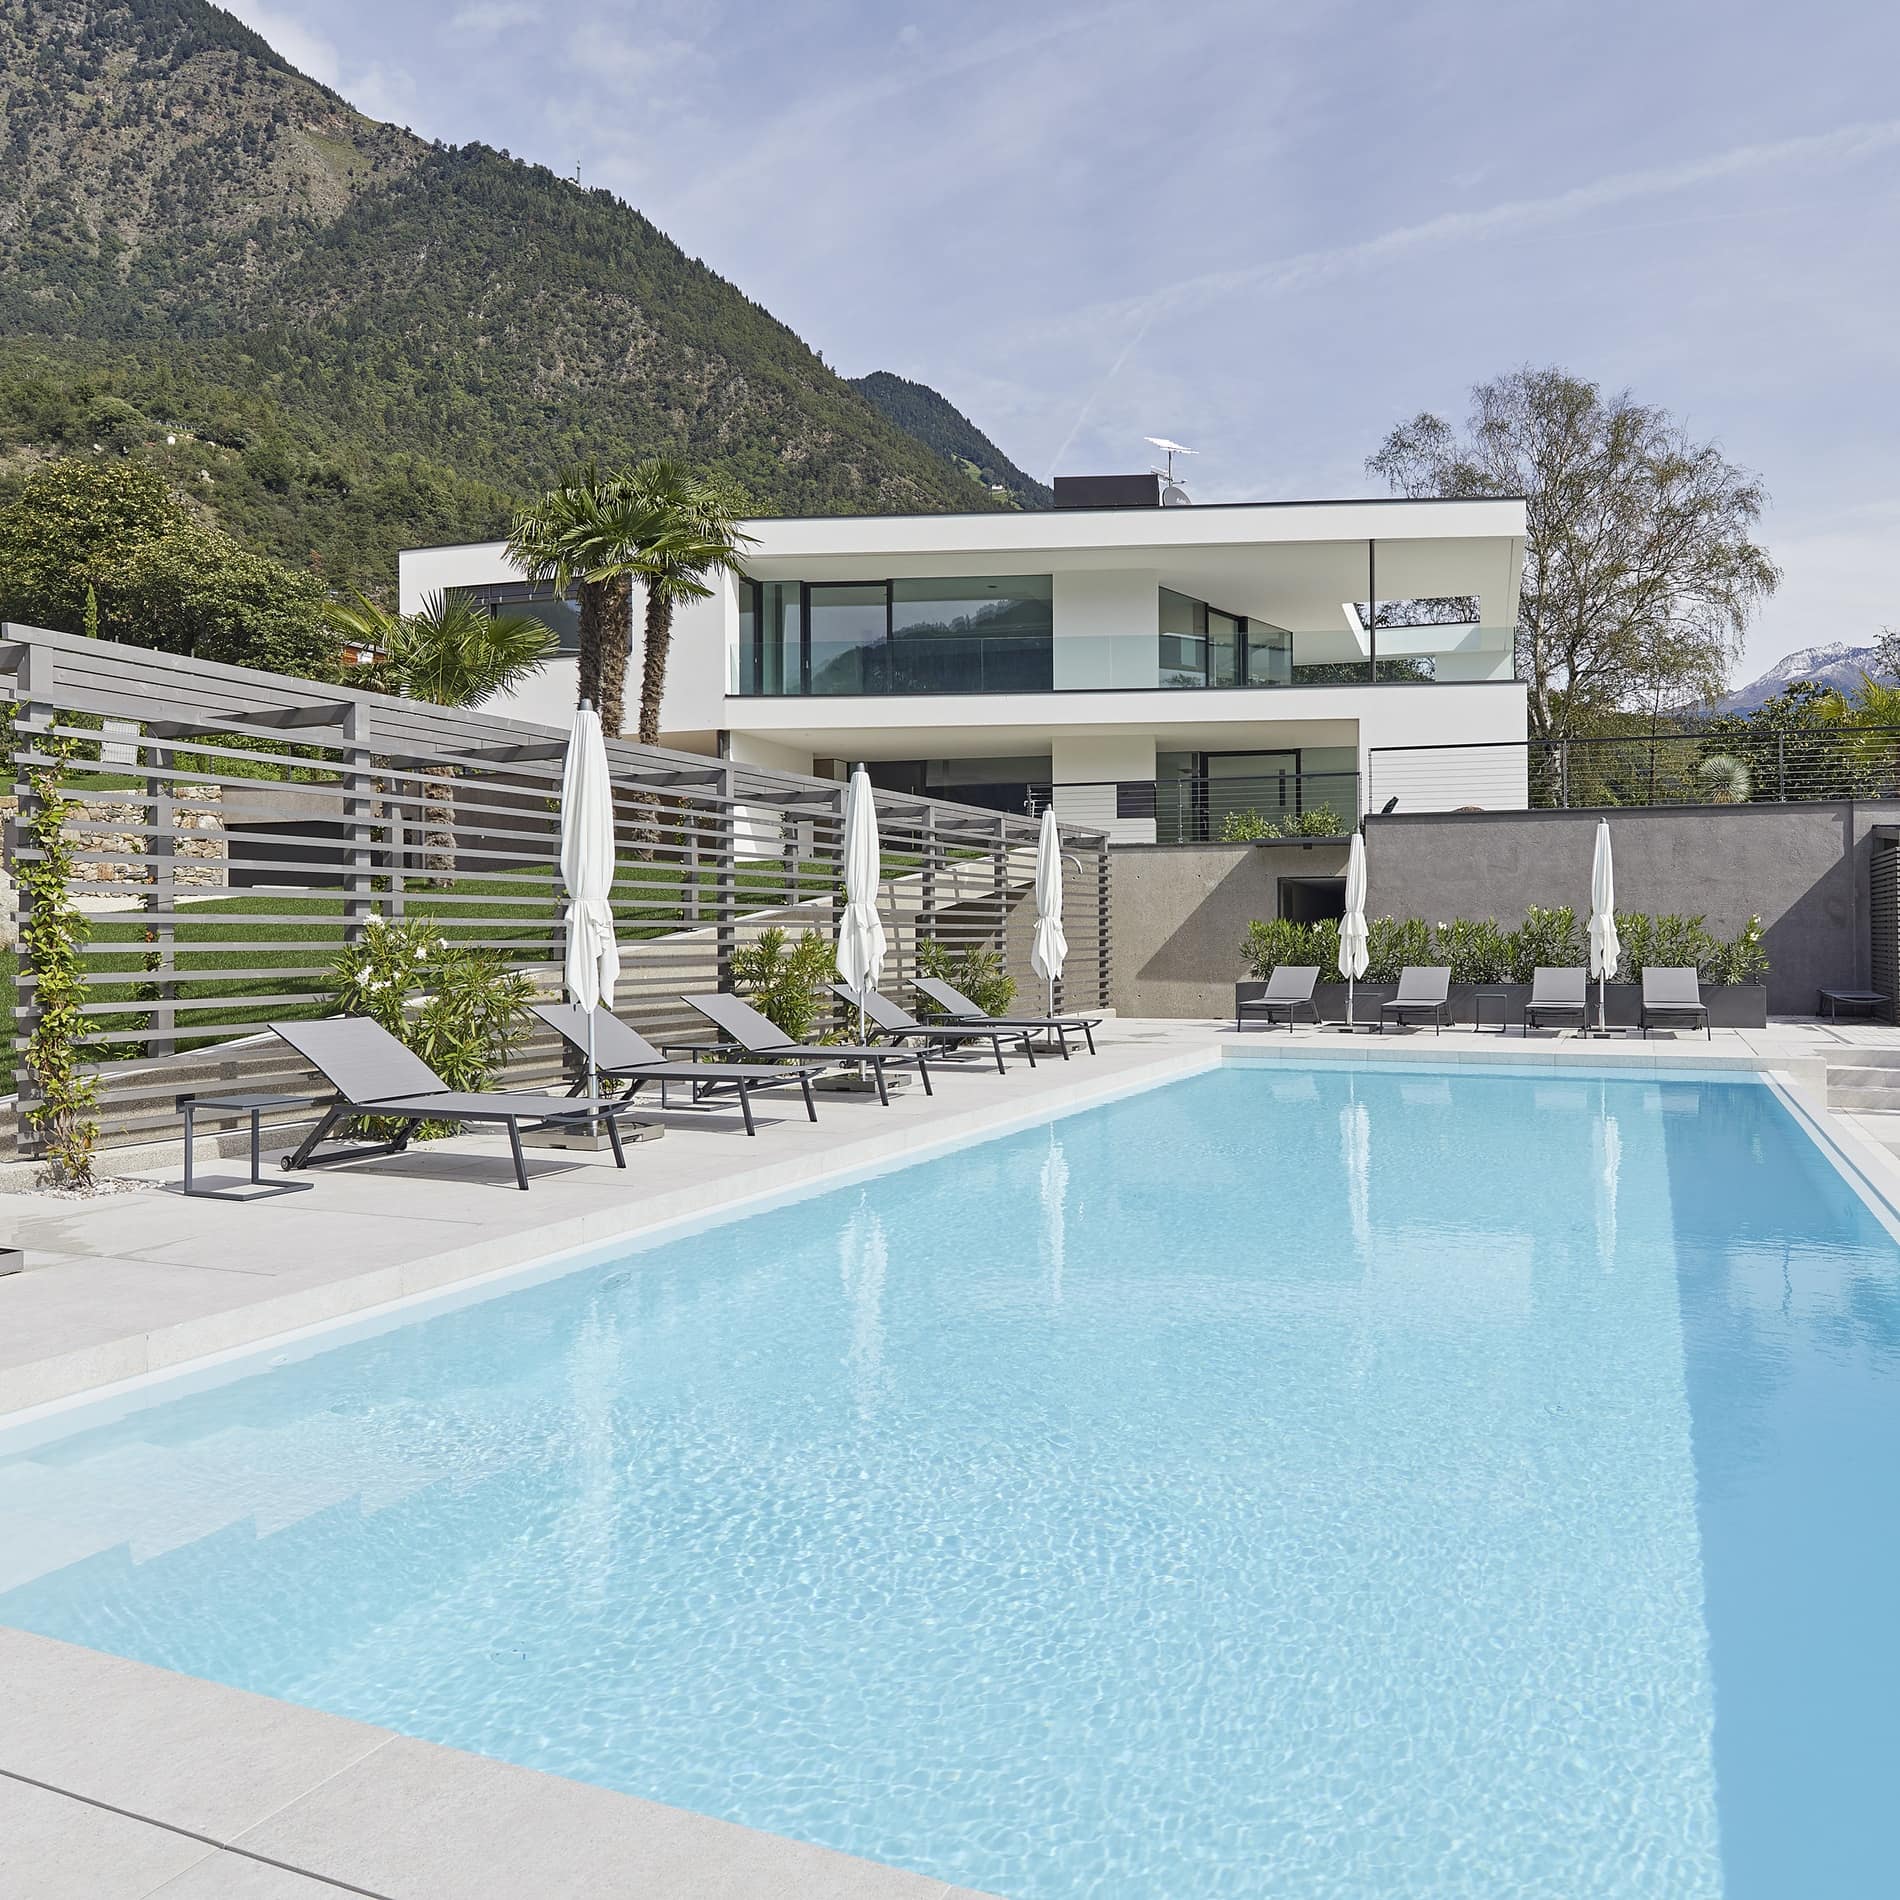 Am Pool der Ferienwohnung in Algund stehen elegante Sonnenliegen: eine mondäne Ferienwohnung in Italien mit Pool